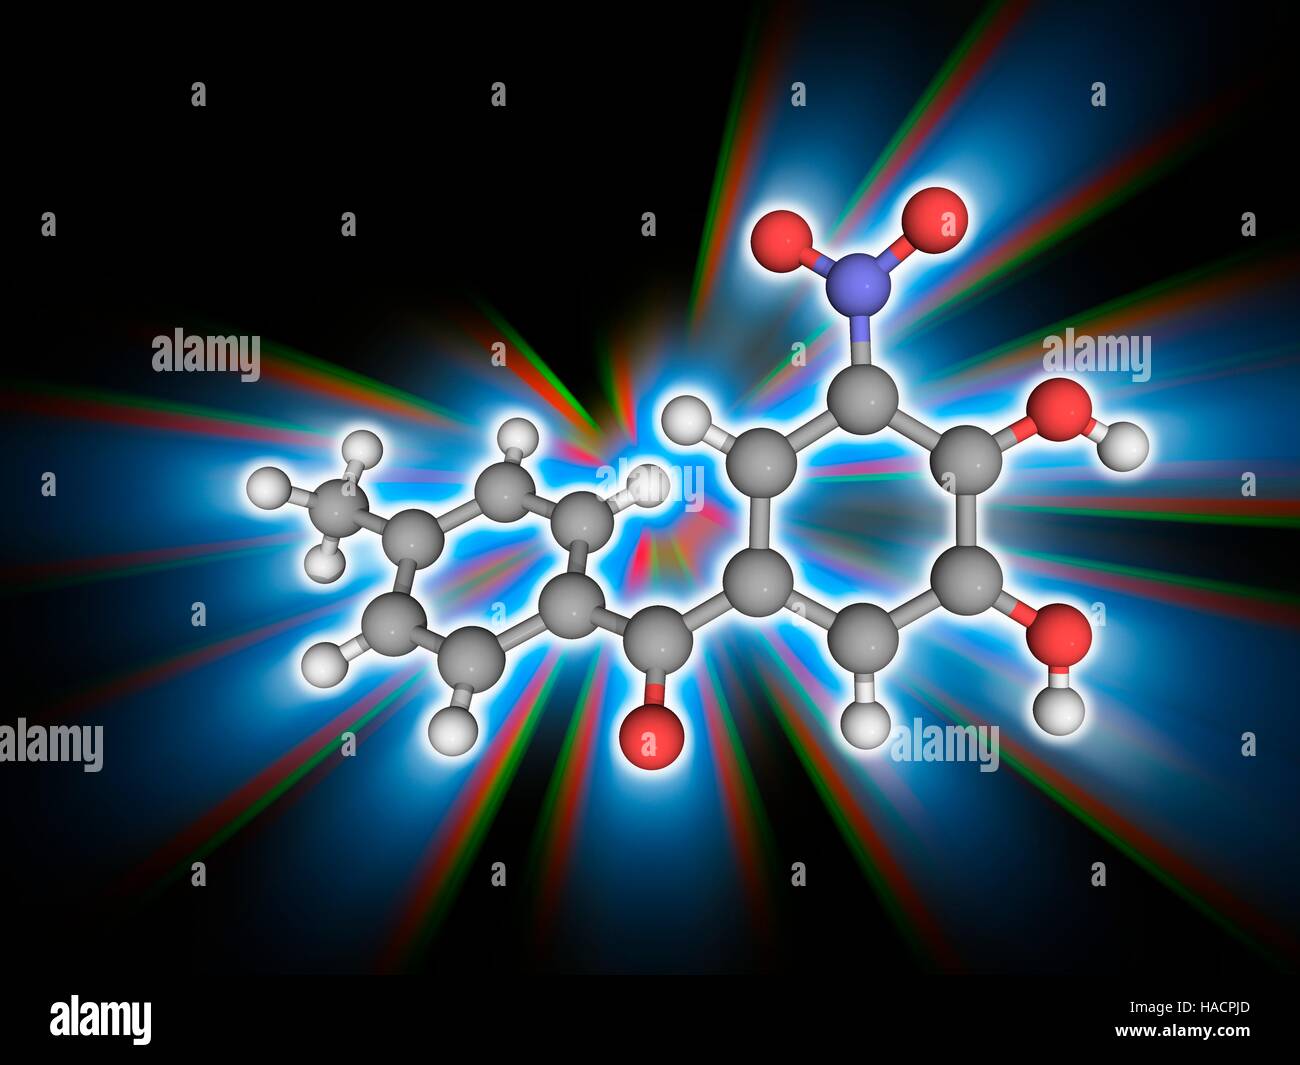 Tolcapon. Molekulares Modell des Medikaments Tolcapon (C14. H11. N.O5), verwendet in der Behandlung der Parkinson-Krankheit. Atome als Kugeln dargestellt werden und sind farblich gekennzeichnet: Kohlenstoff (grau), Wasserstoff (weiß), Stickstoff (blau) und Sauerstoff (rot). Abbildung. Stockfoto